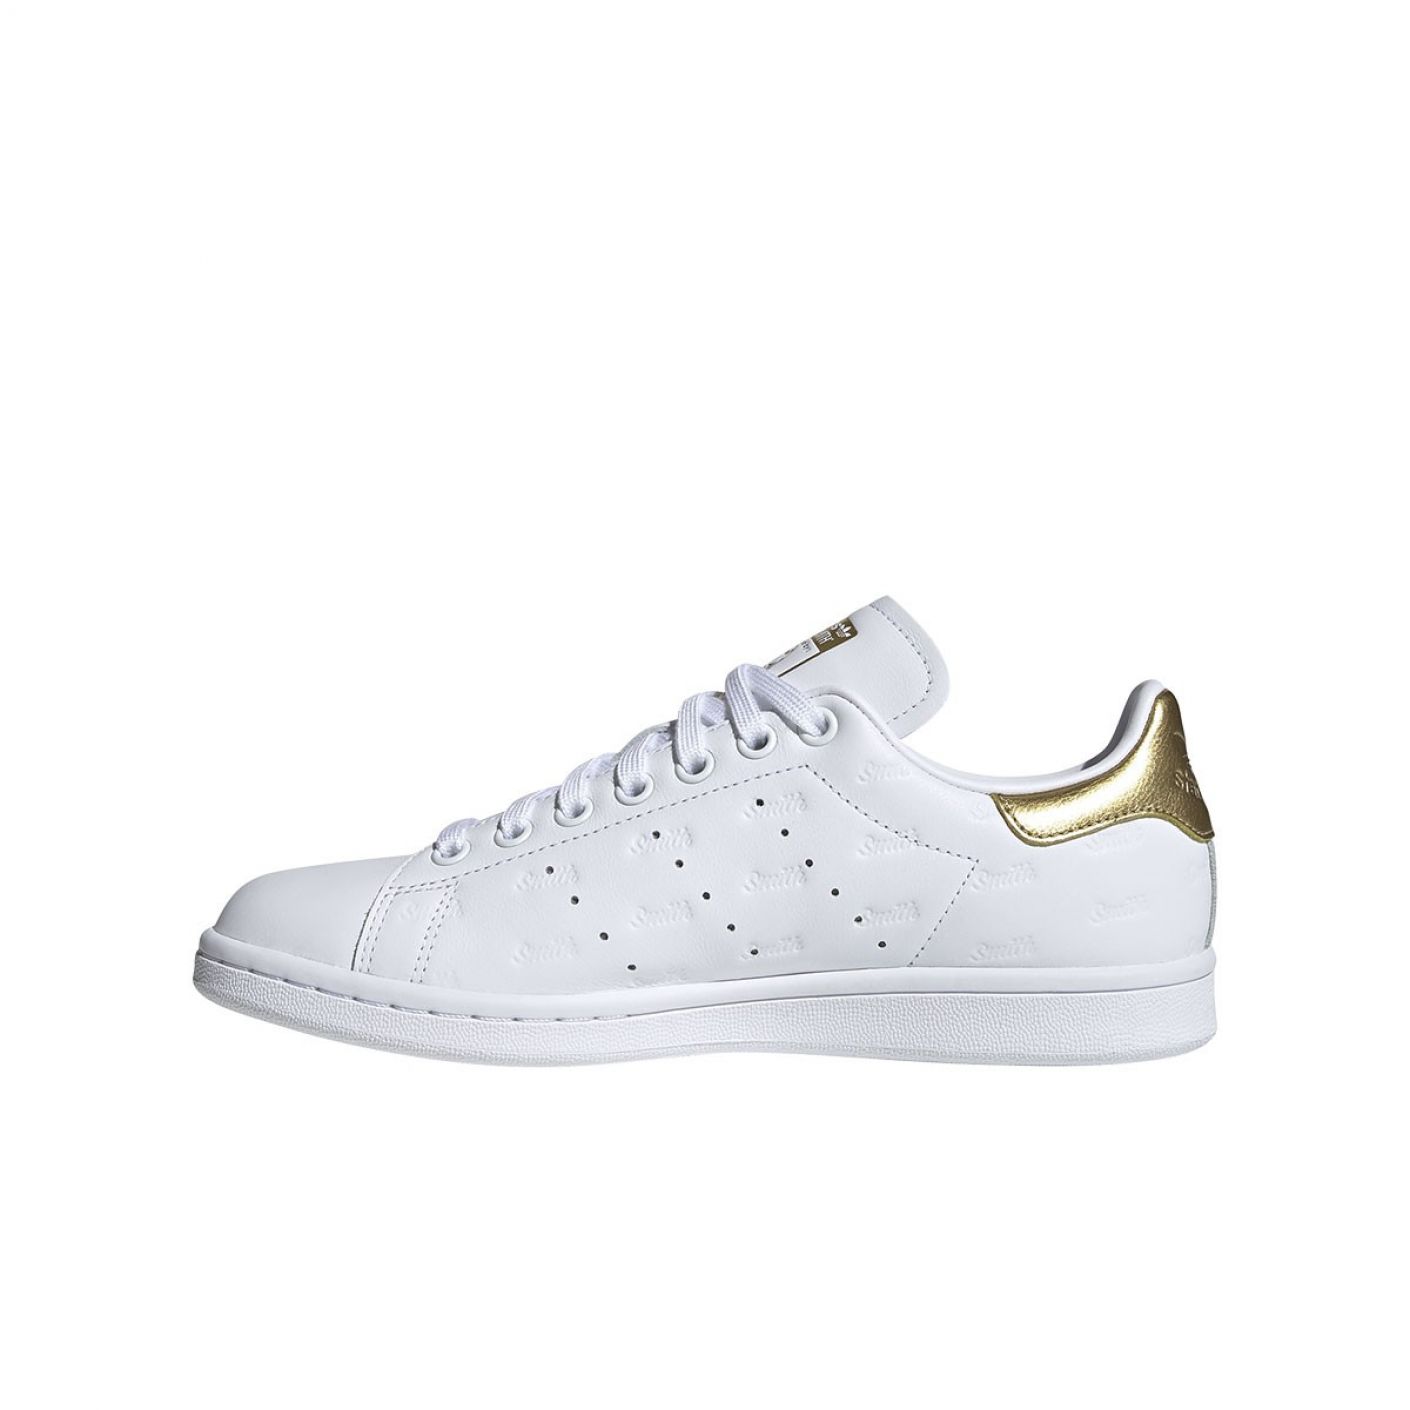 Adidas Stan Smith Textured White-Gold for Women